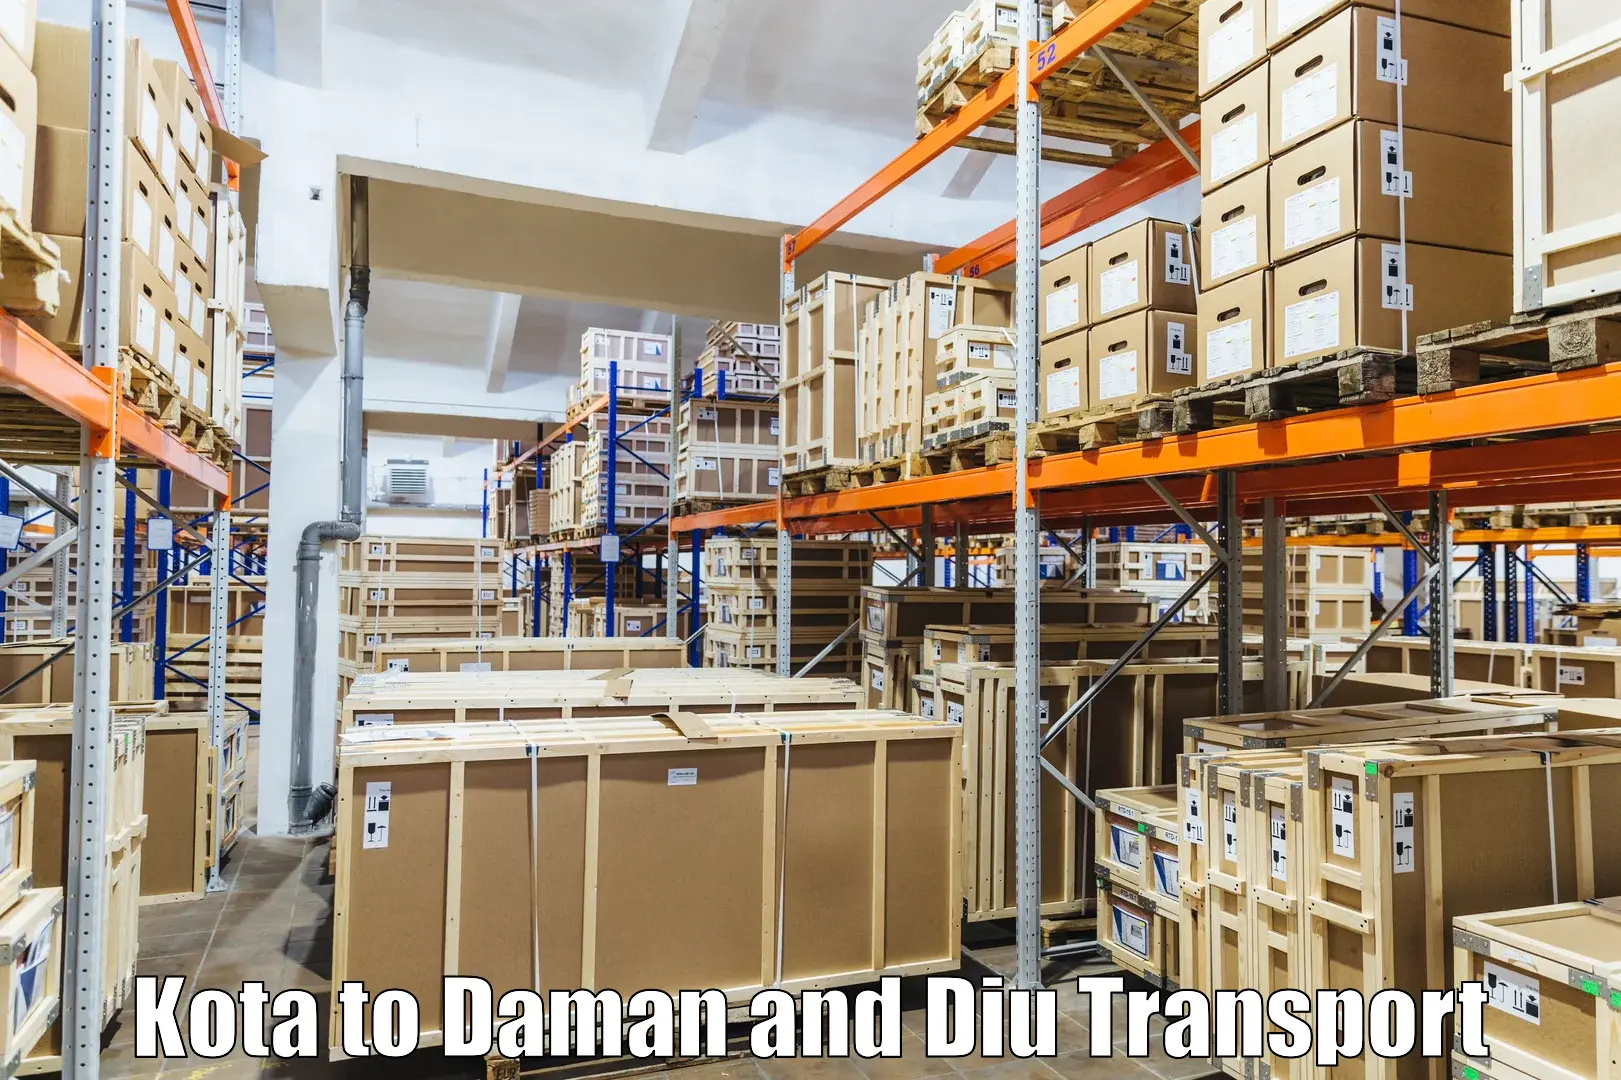 Furniture transport service Kota to Daman